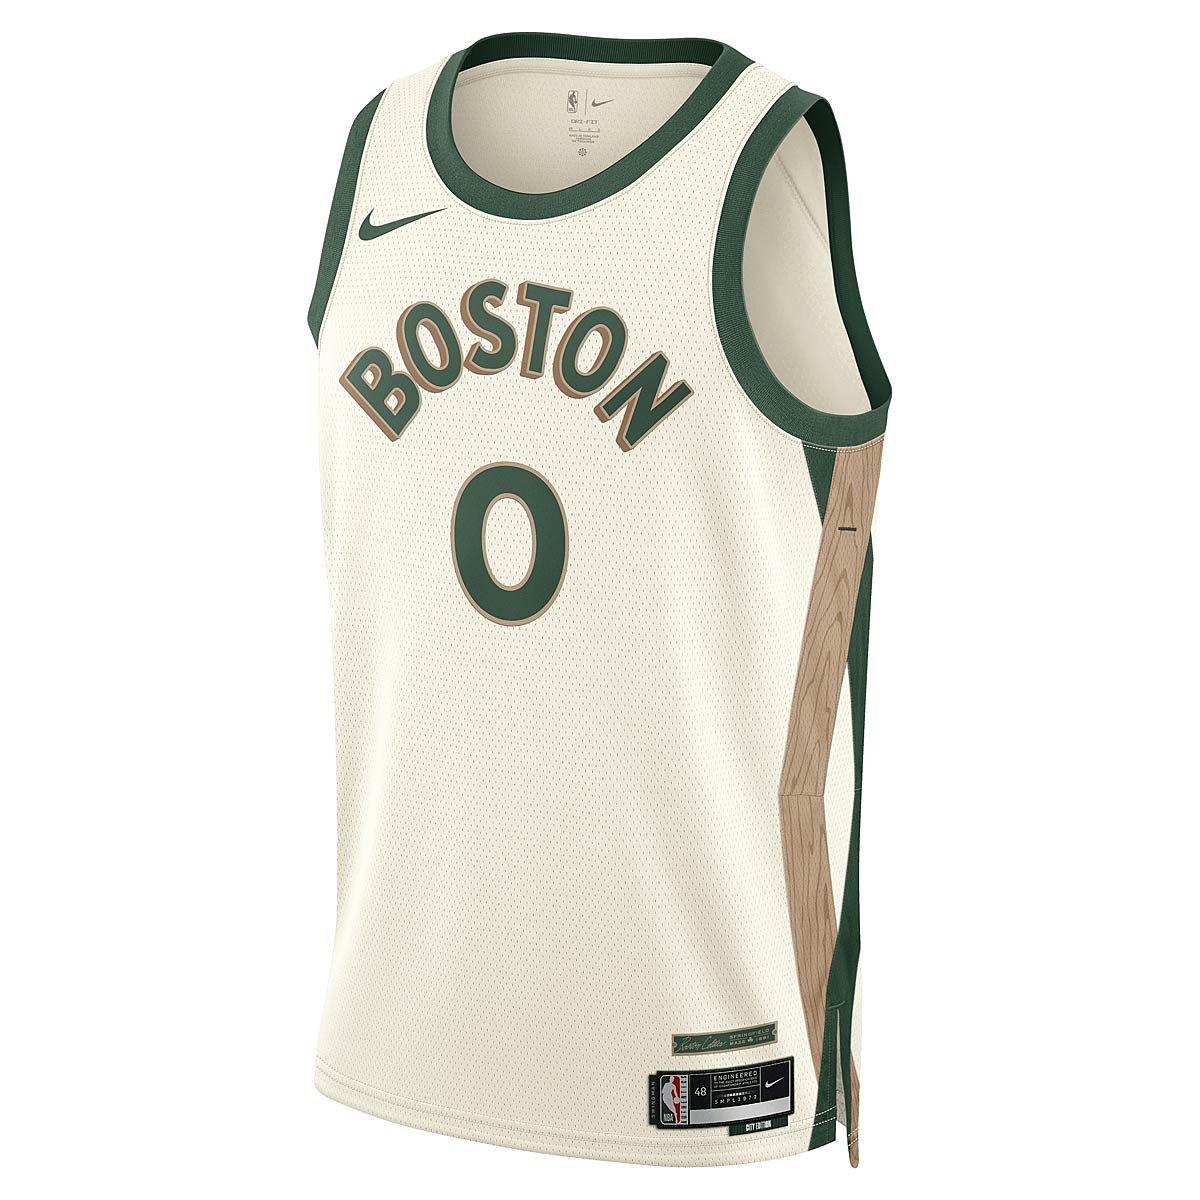 Nike NBA Boston Celtics Dri-fit City Edition Swingman Jersey Jayson Tatum, Sail/stealth-weiß L